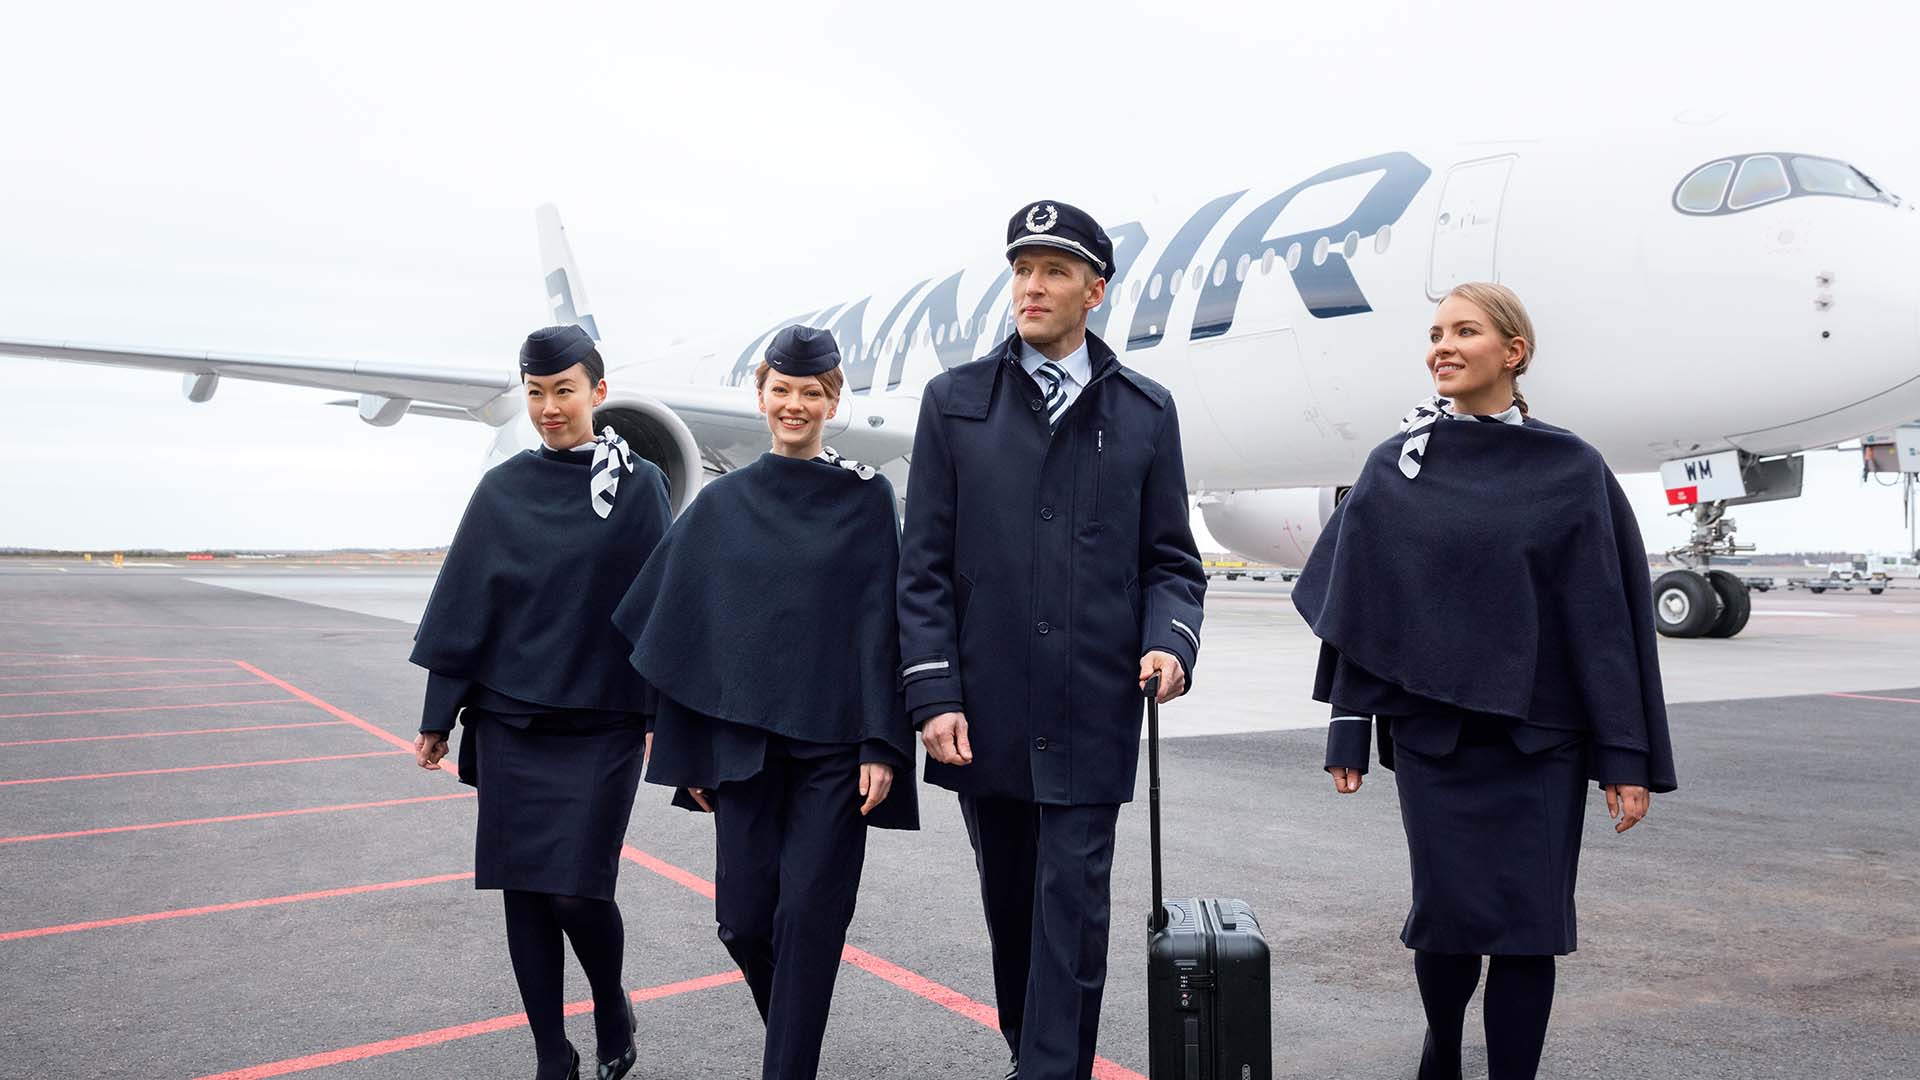 Finnair crew in front of a A350, image by Mikko Ryhänen, Woodpecker